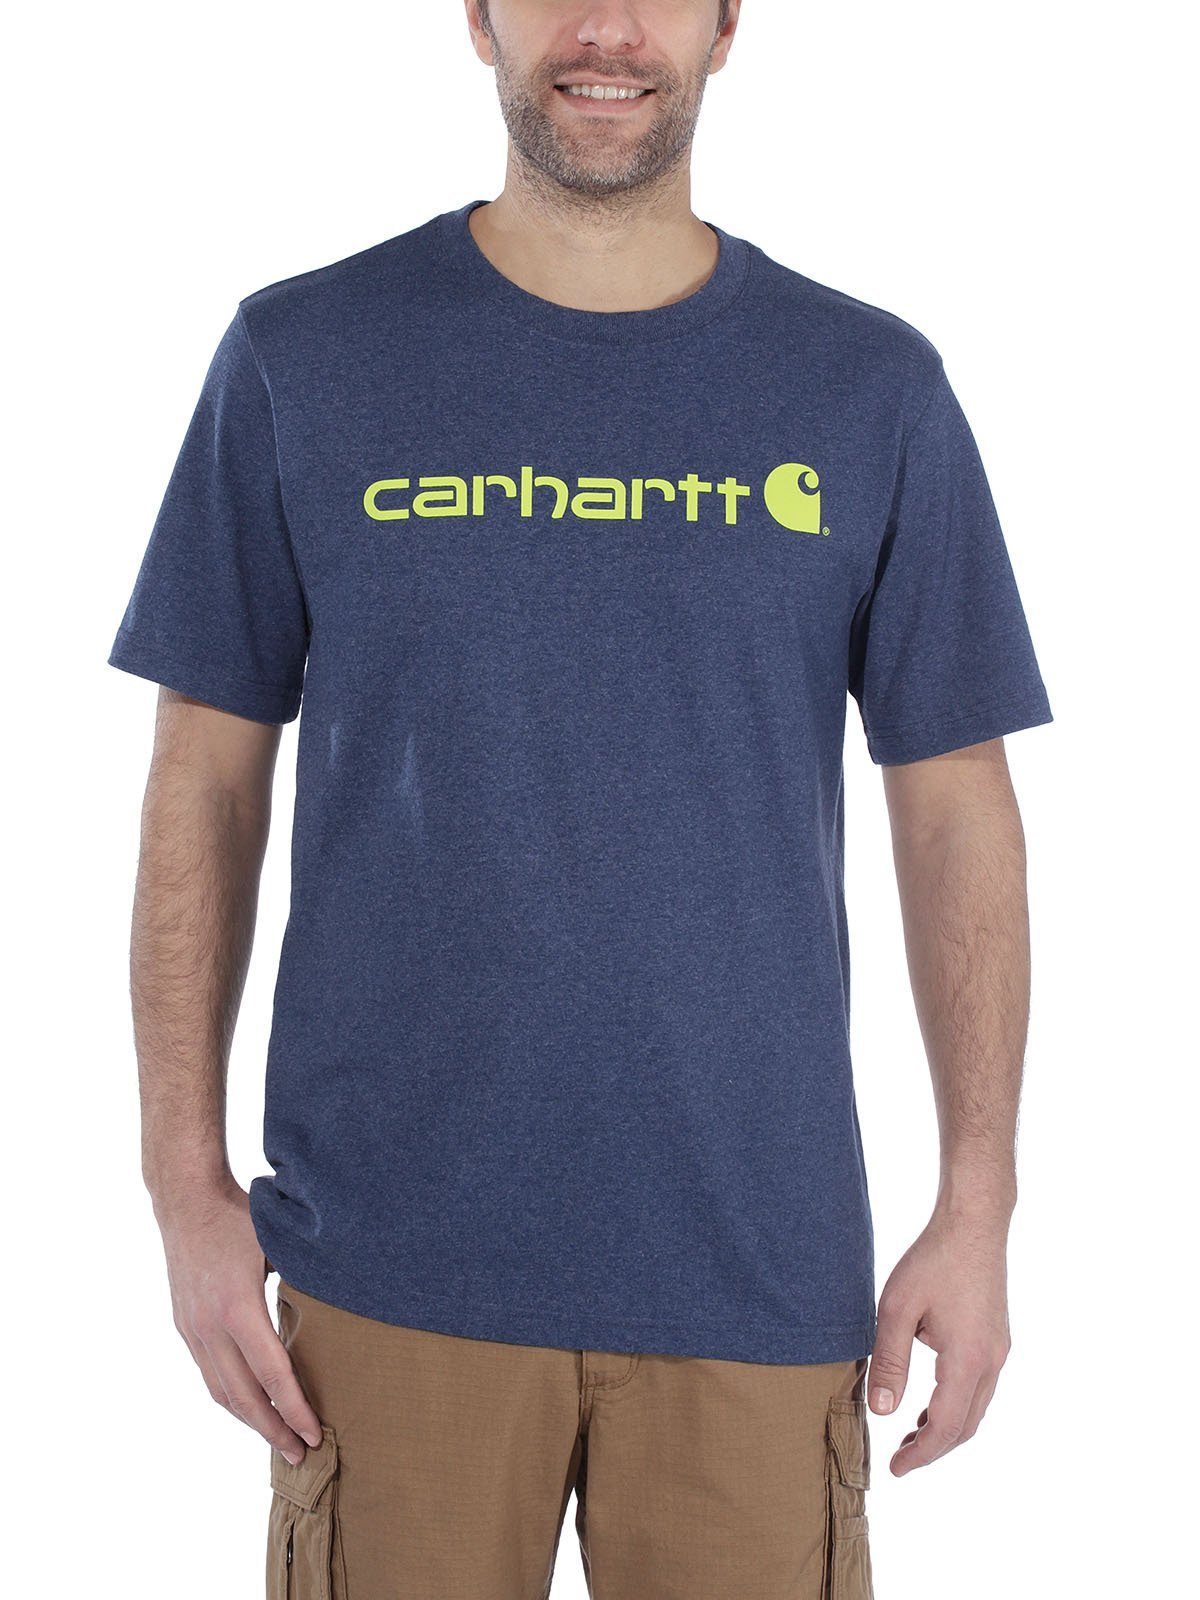 Lockere T-Shirt, Carhartt Carhartt Logo T-Shirt Passform